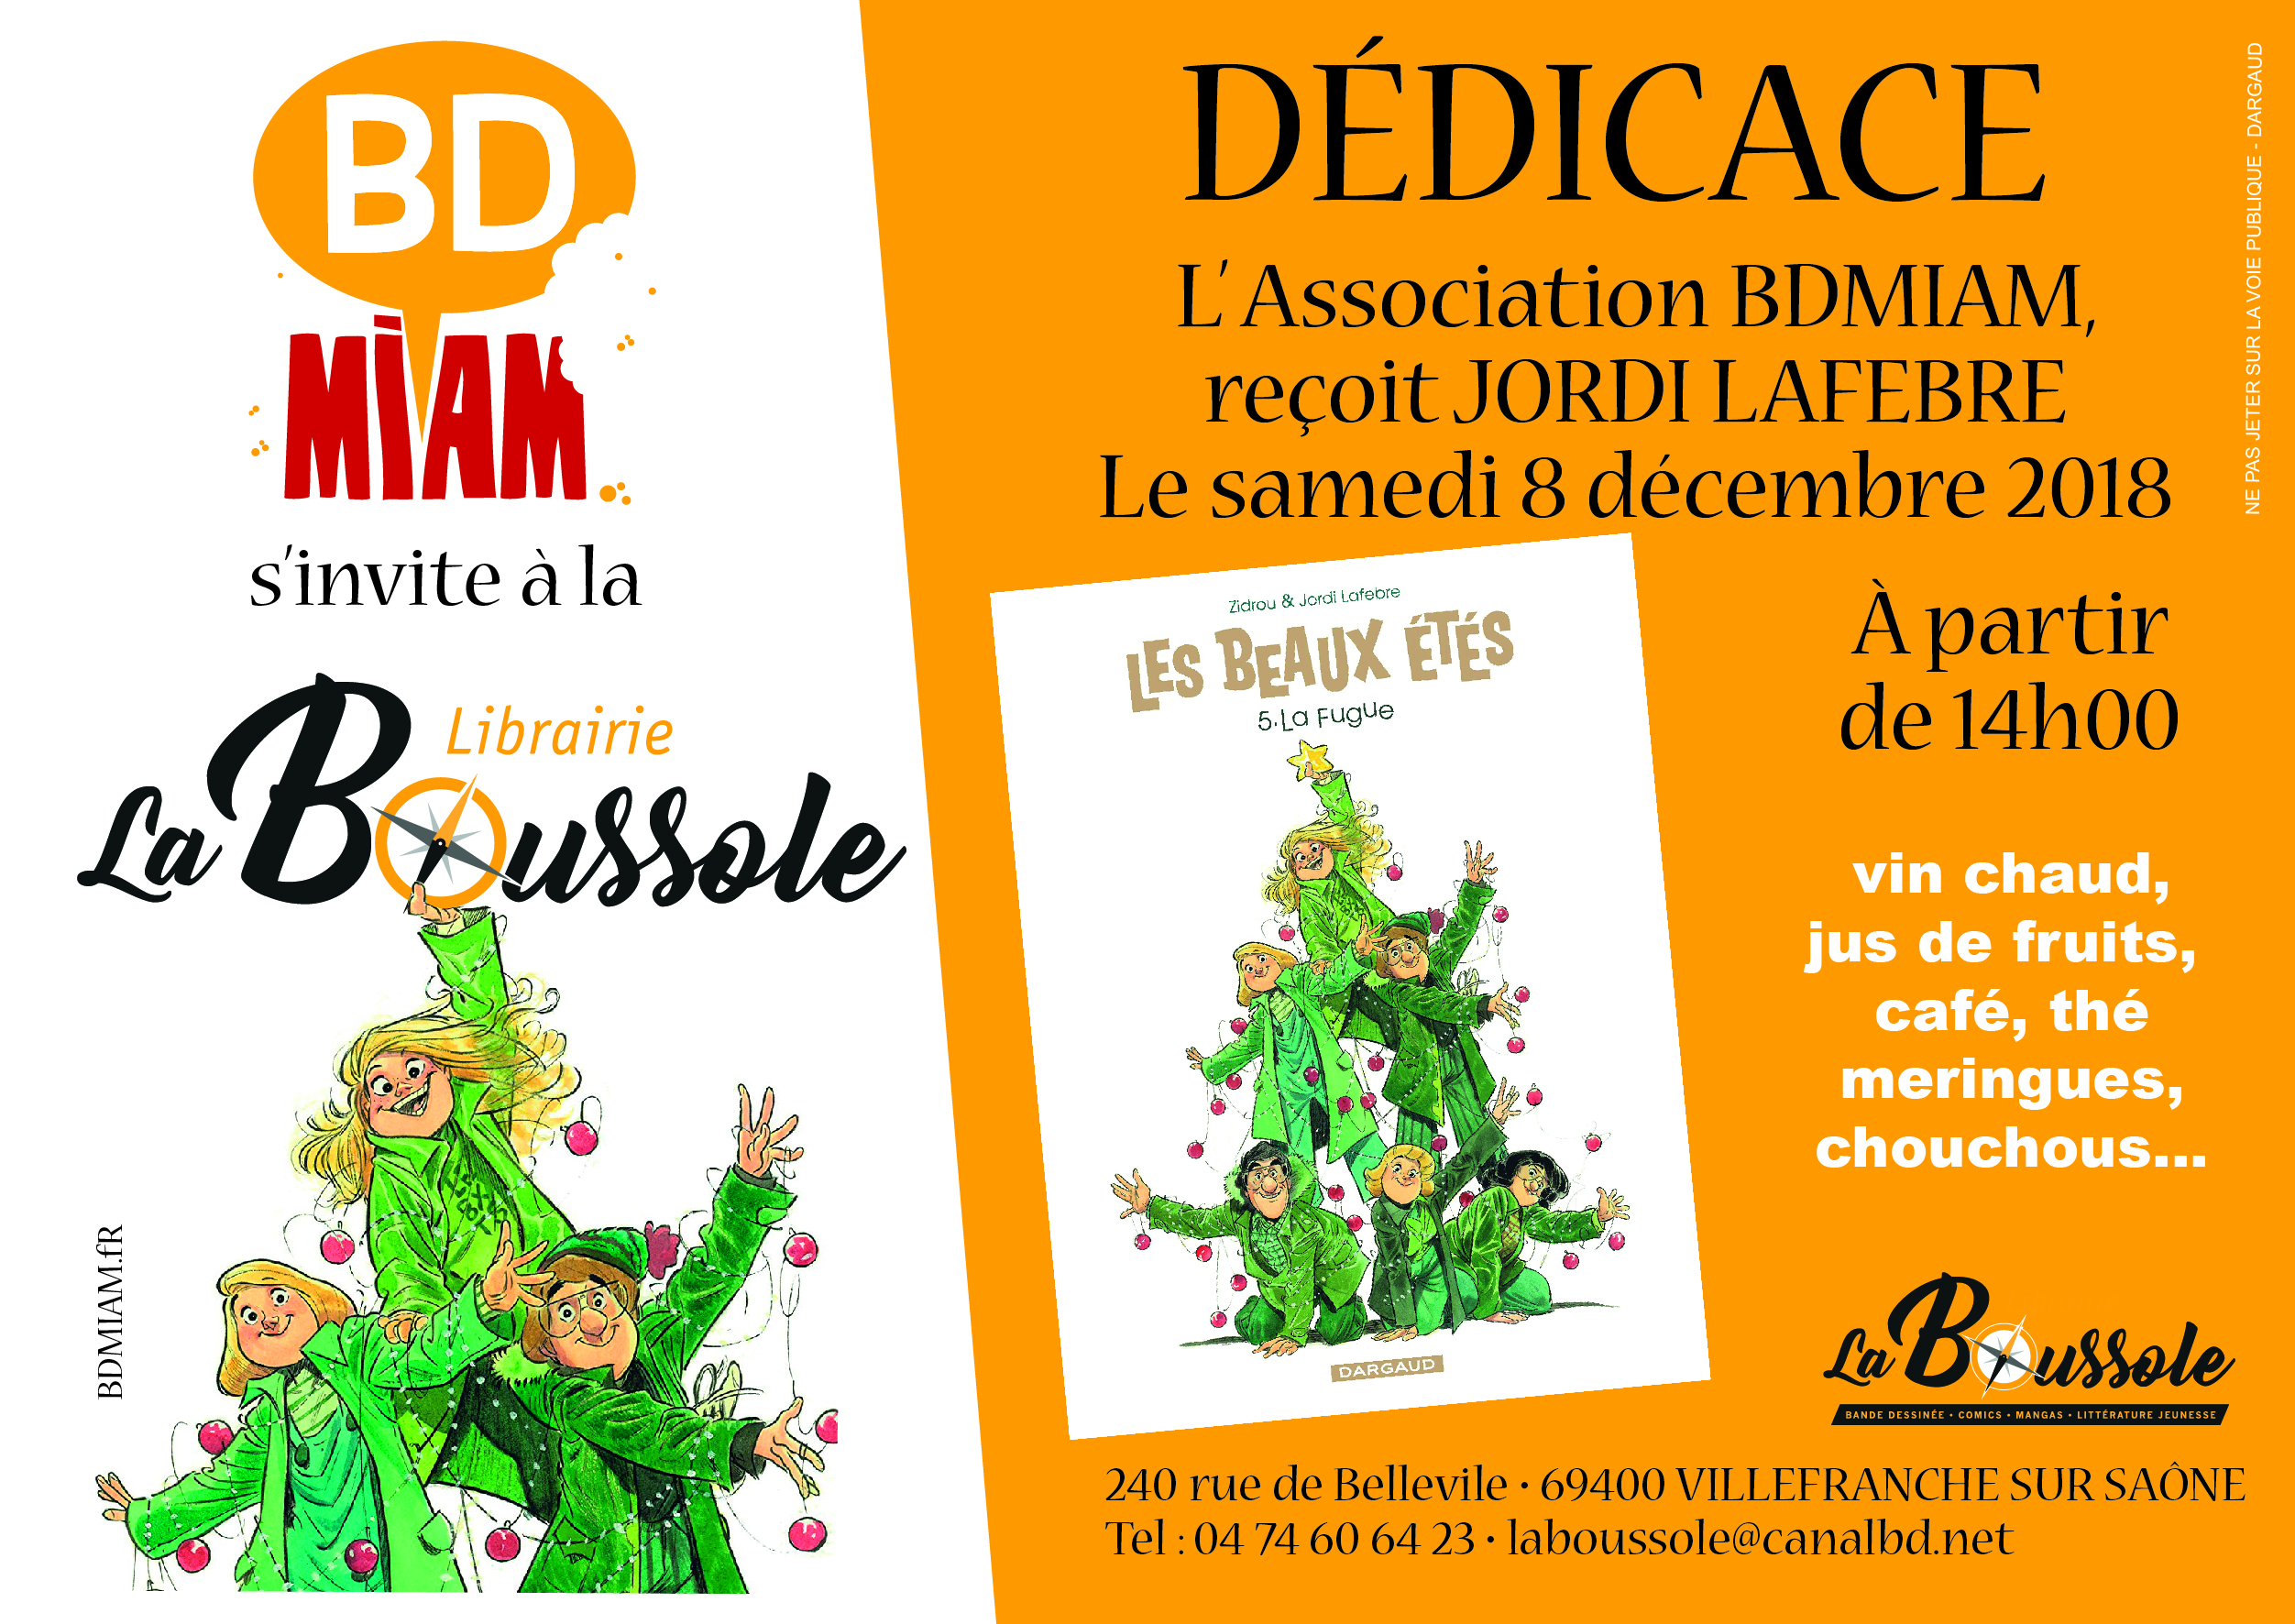 8 Décembre 2019 : Jordi Lafebre à La Boussole avec Bd Miam !